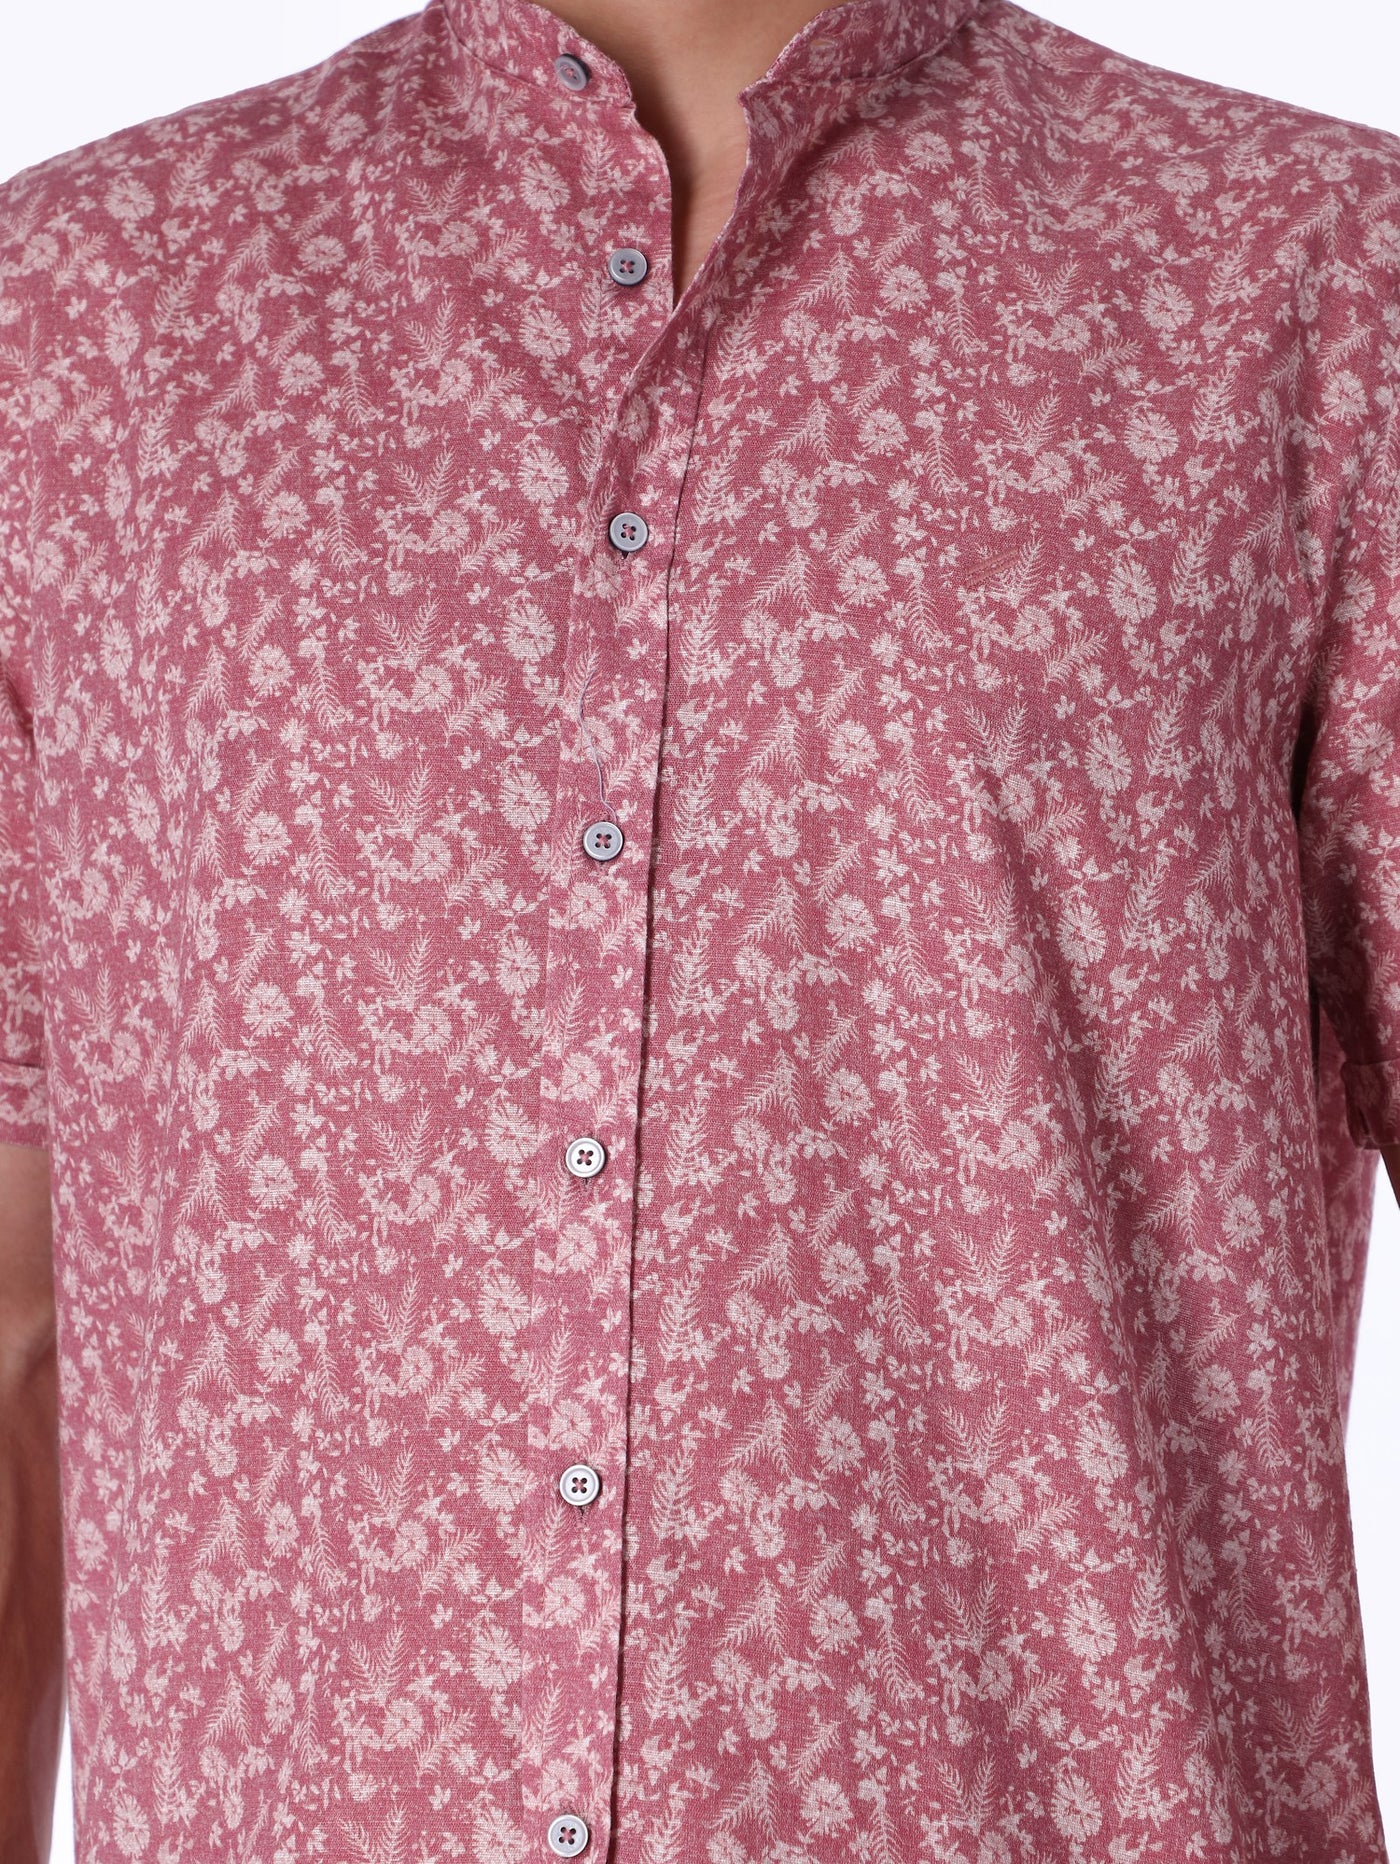 Daniel Hechter Men's All-Over Floral Print Shirt